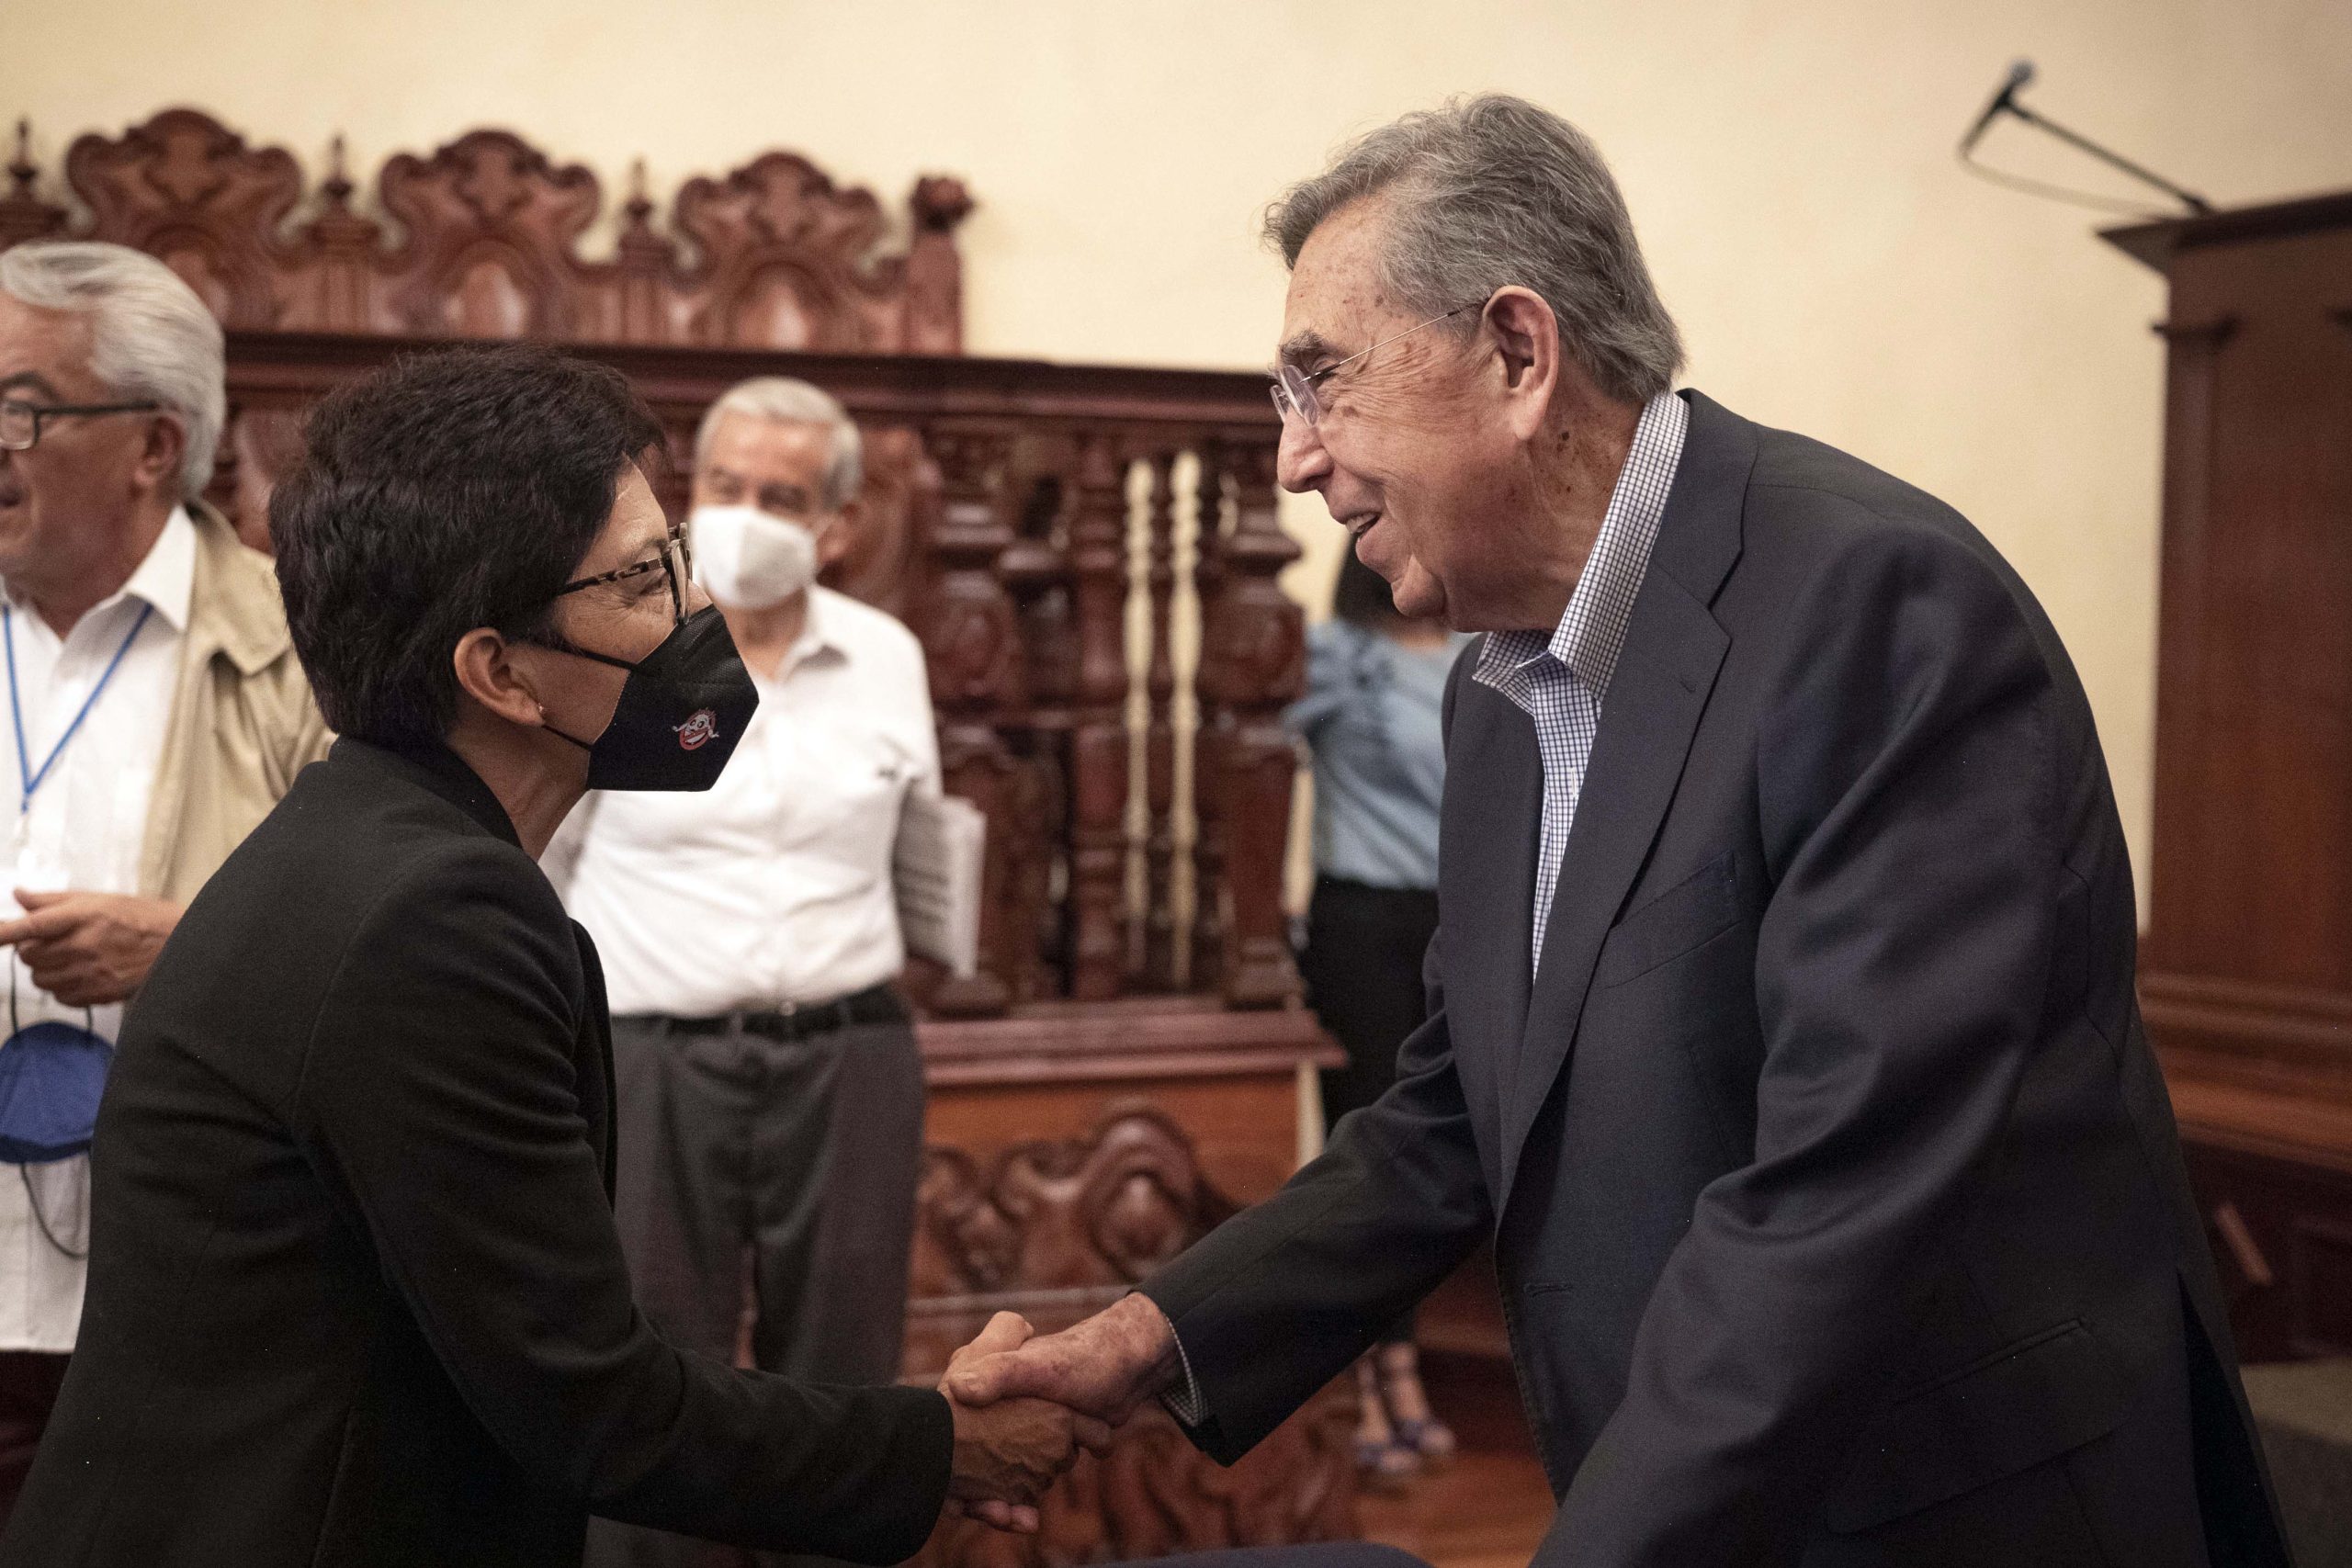 Presenta Cuauhtémoc Cárdenas su libro “Por una democracia progresista” en la Fenali 2022